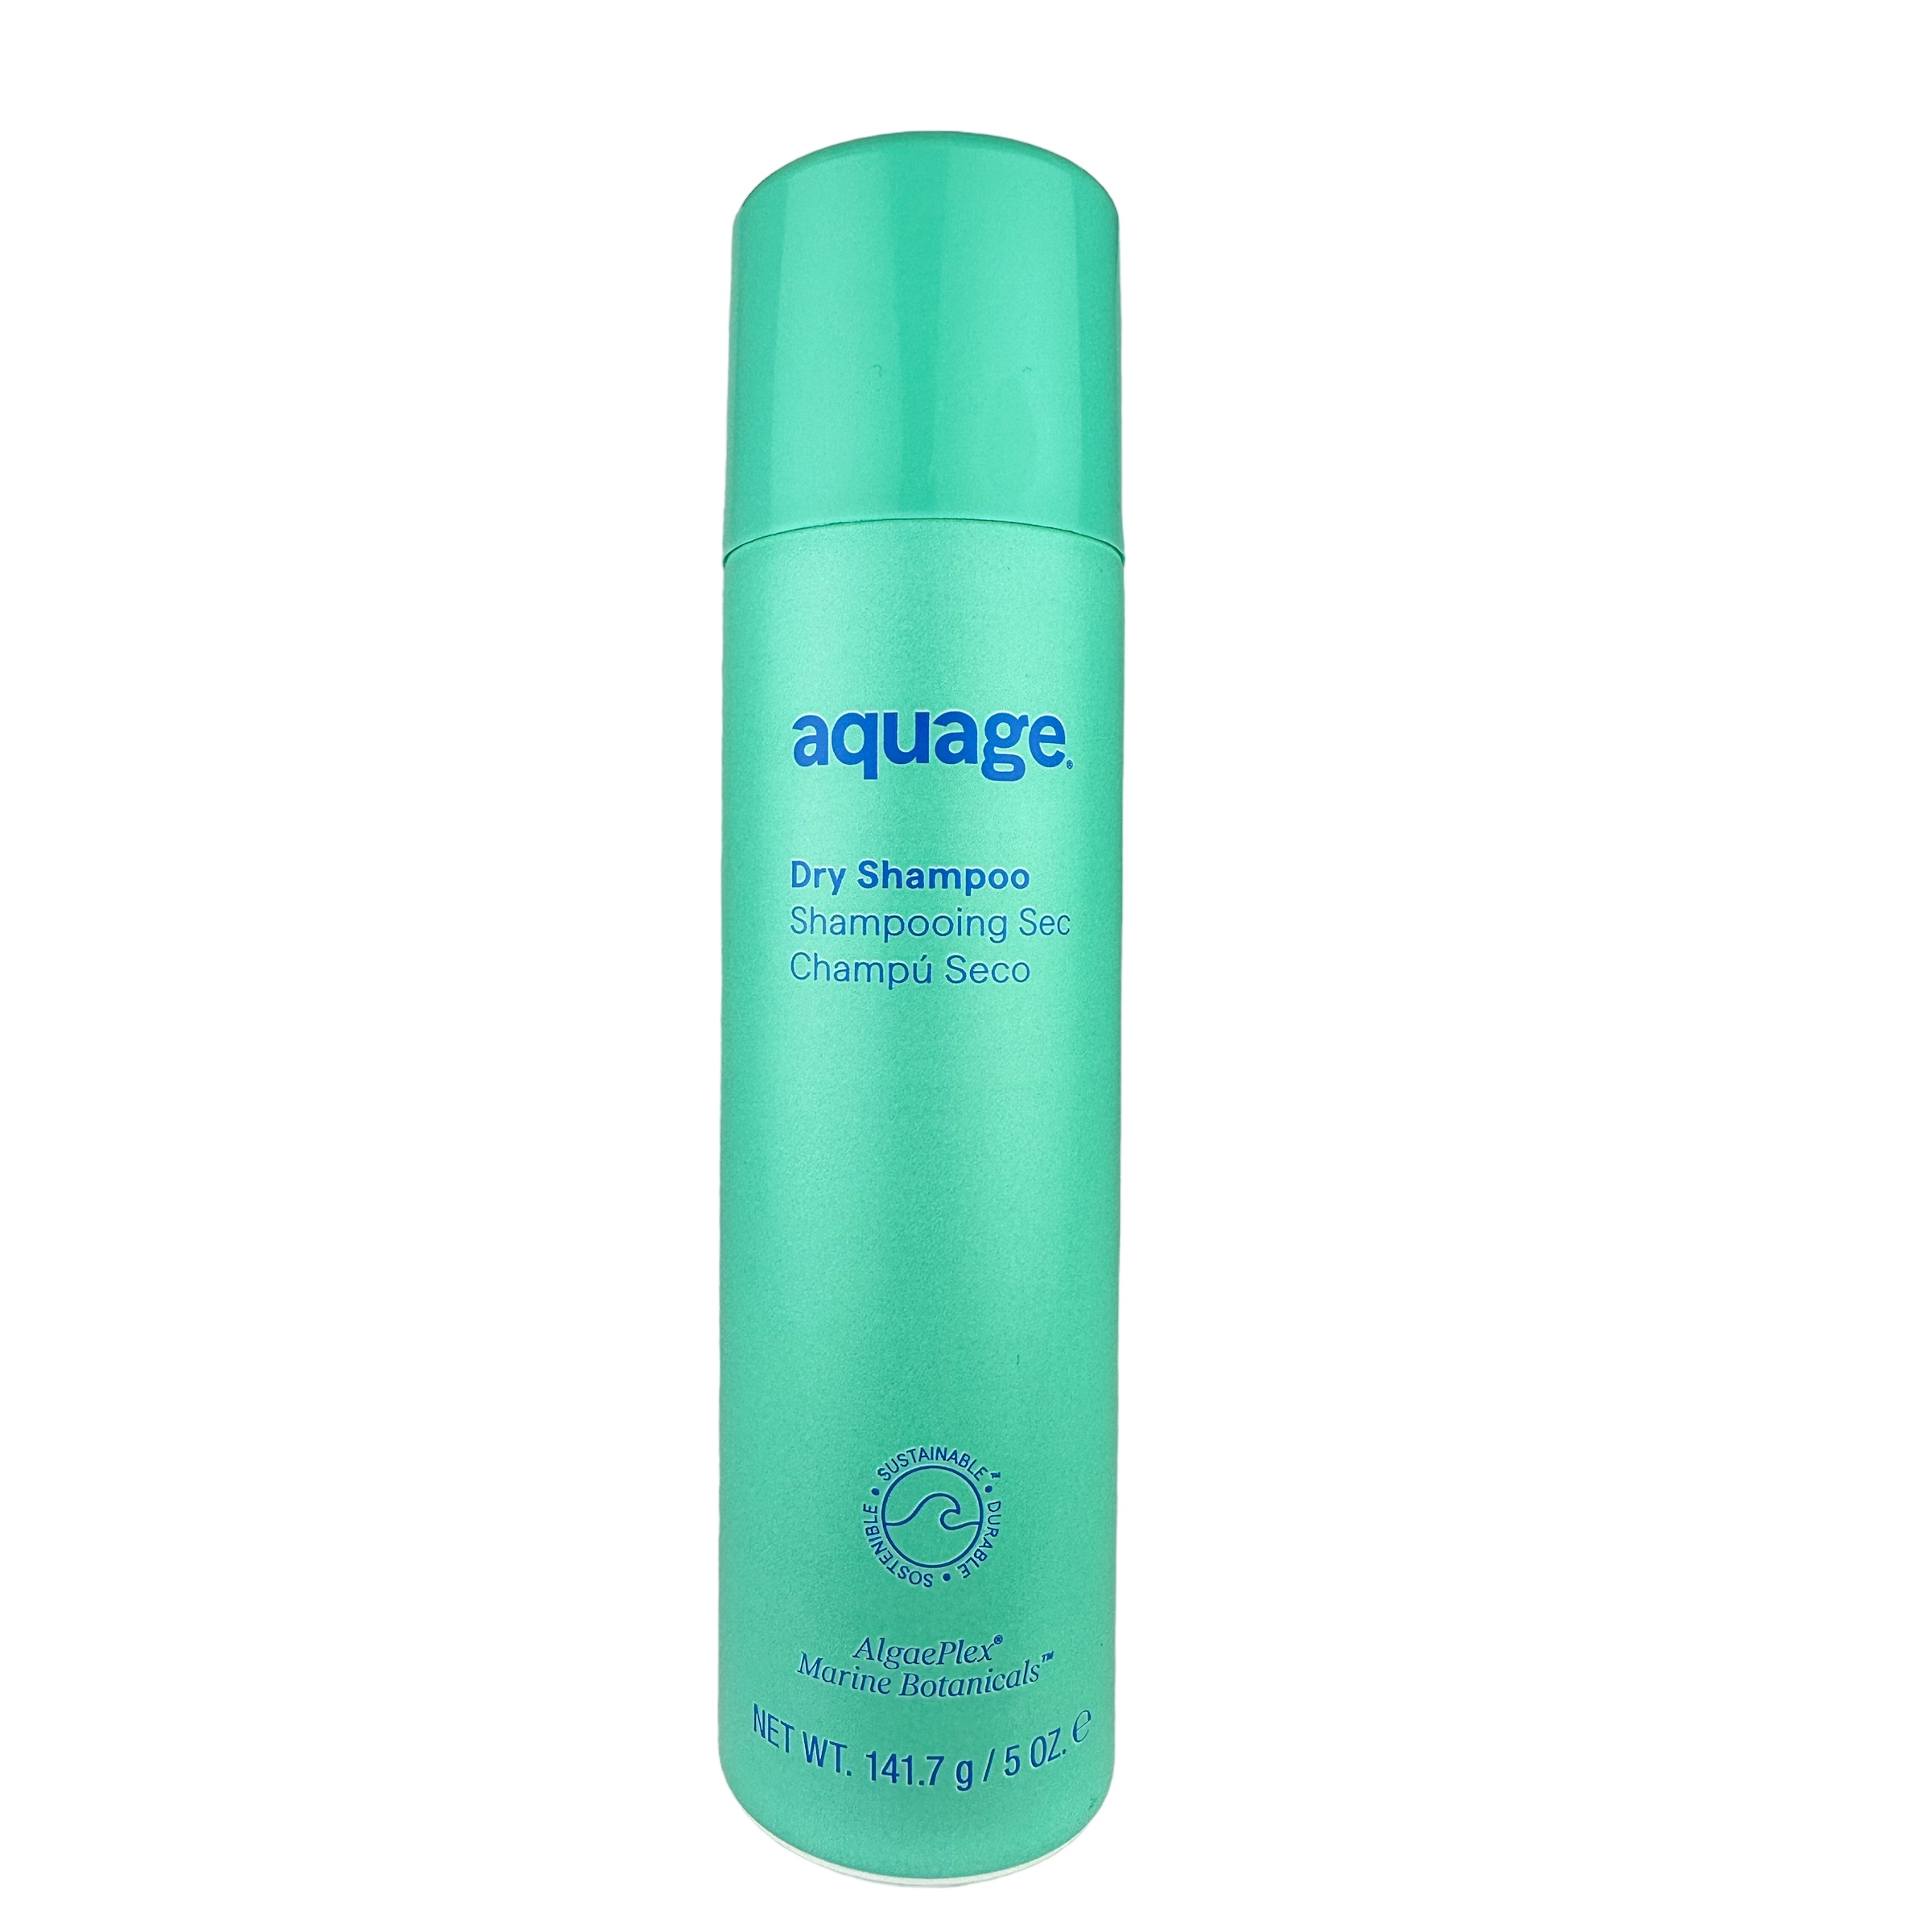 Aquage Dry Shampoo